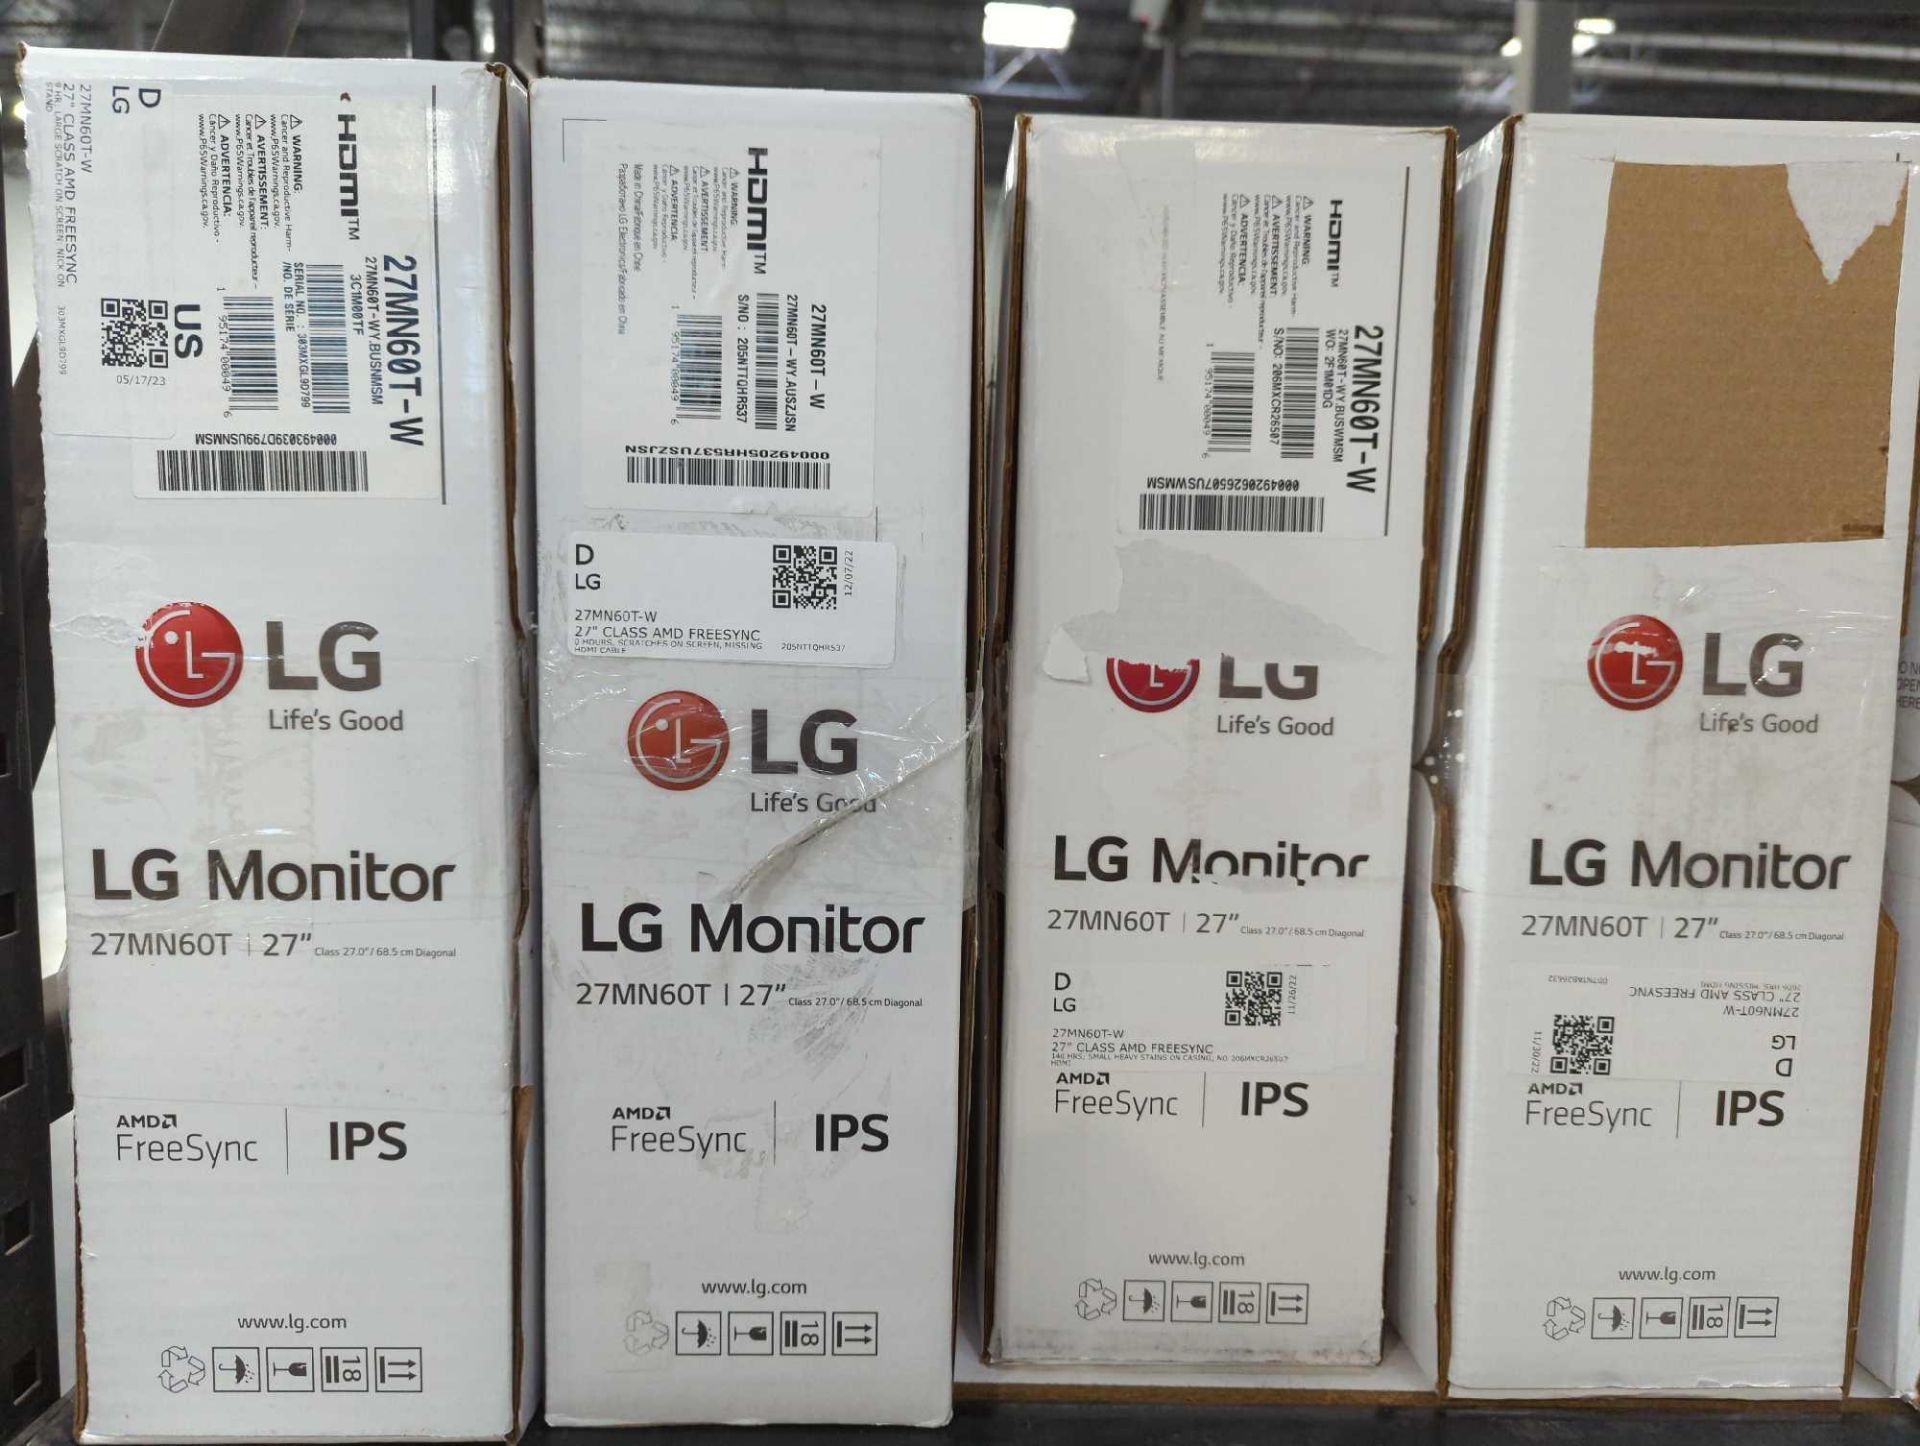 LG Monitors - Image 2 of 4